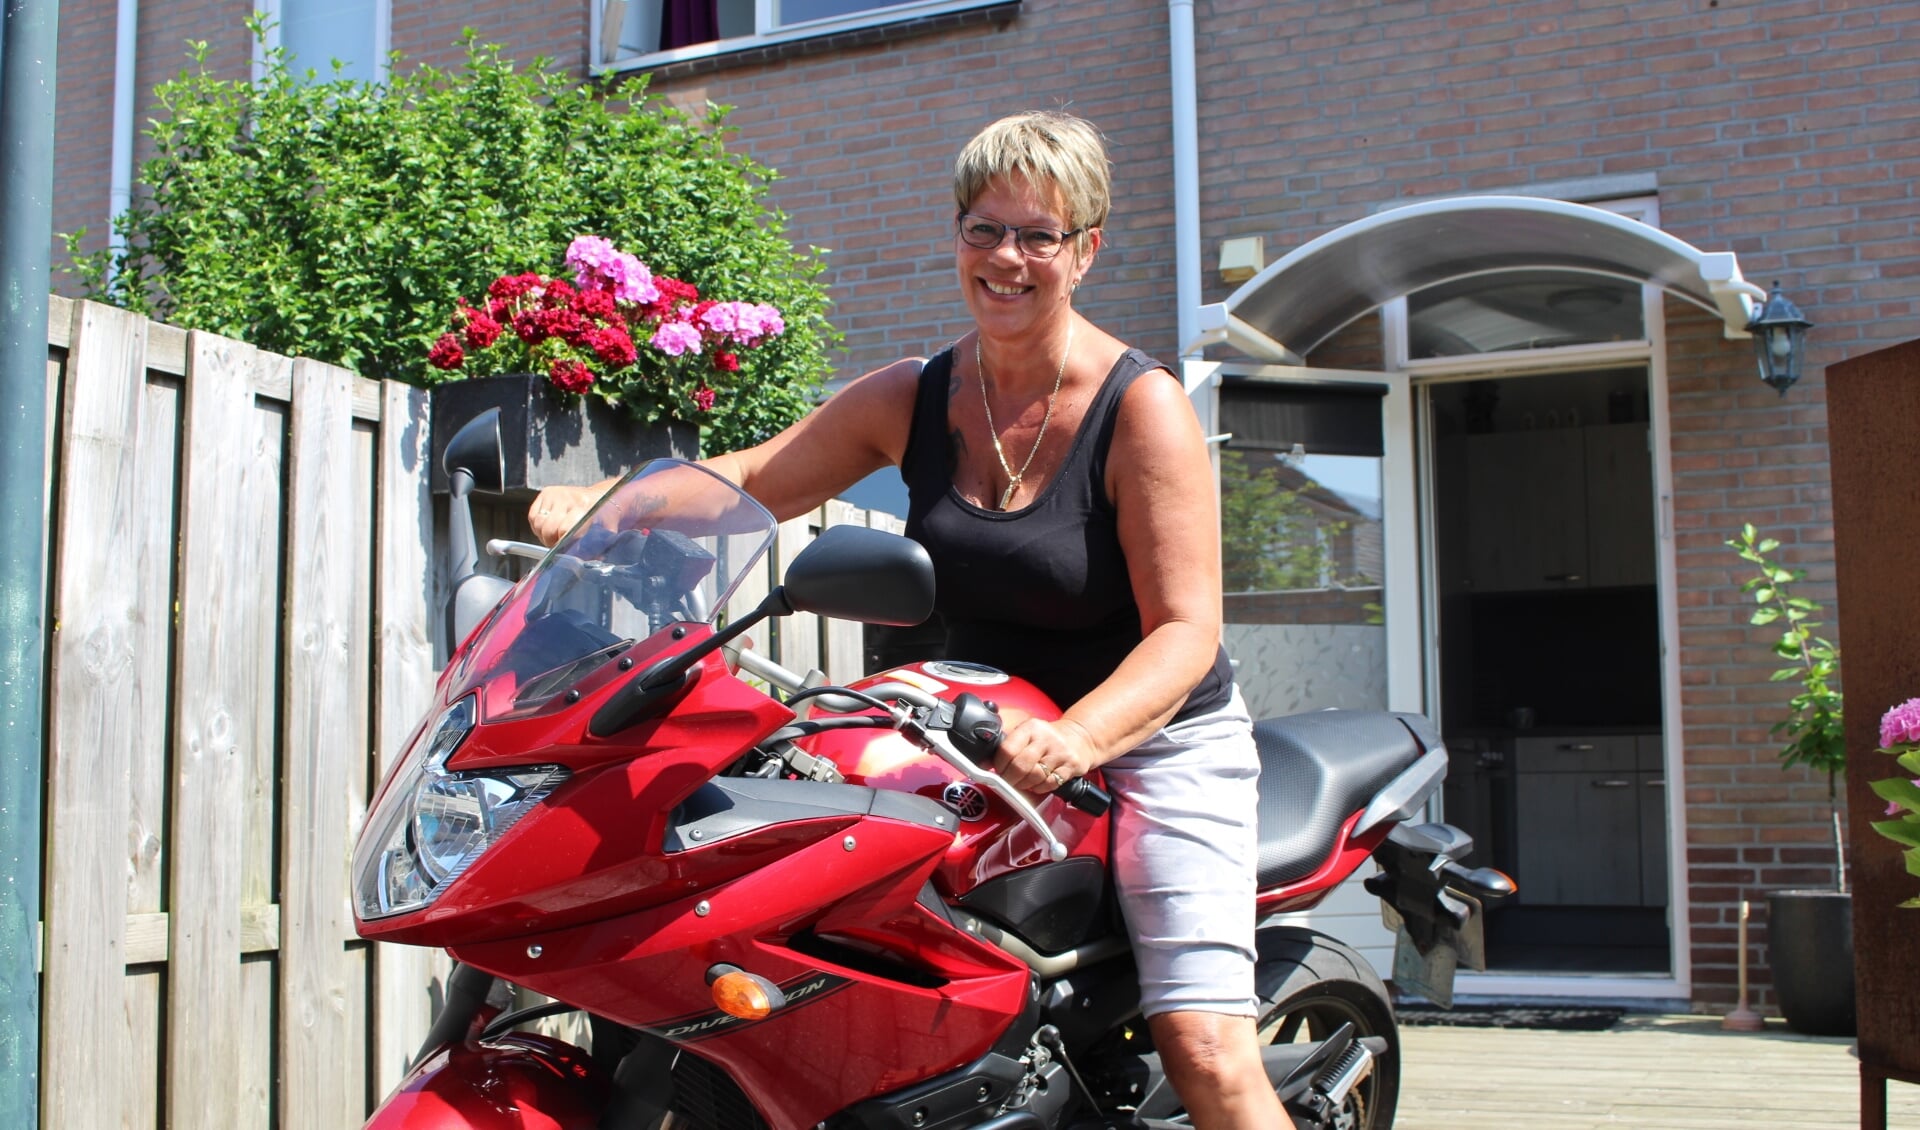  “Voor veel liefhebbers voelt motorrijden als de ultieme vrijheid”, weet Anita Jansen. 